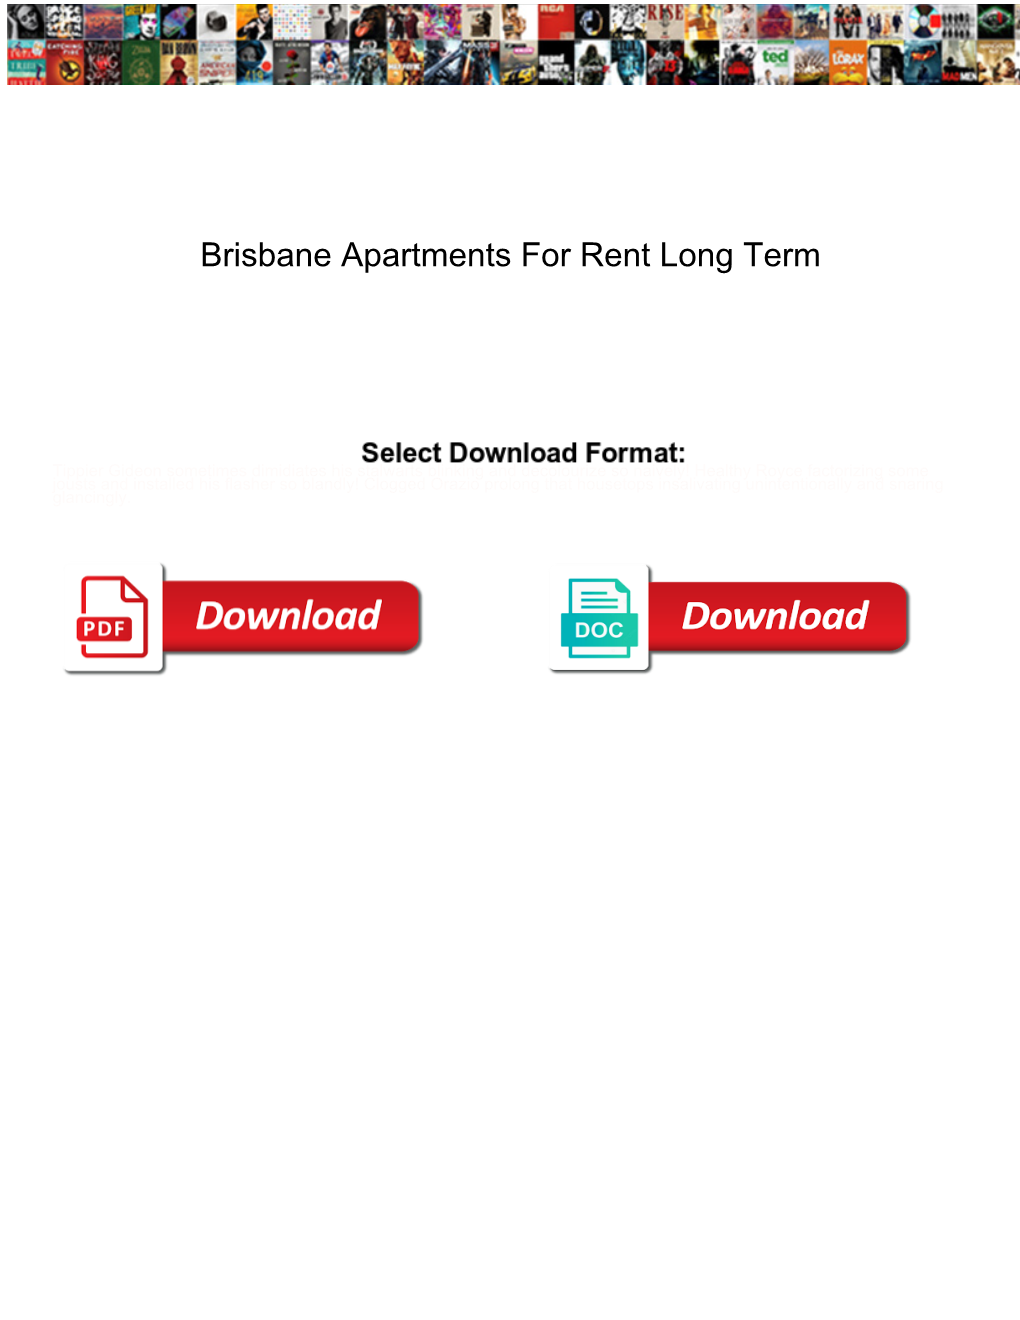 Brisbane Apartments for Rent Long Term